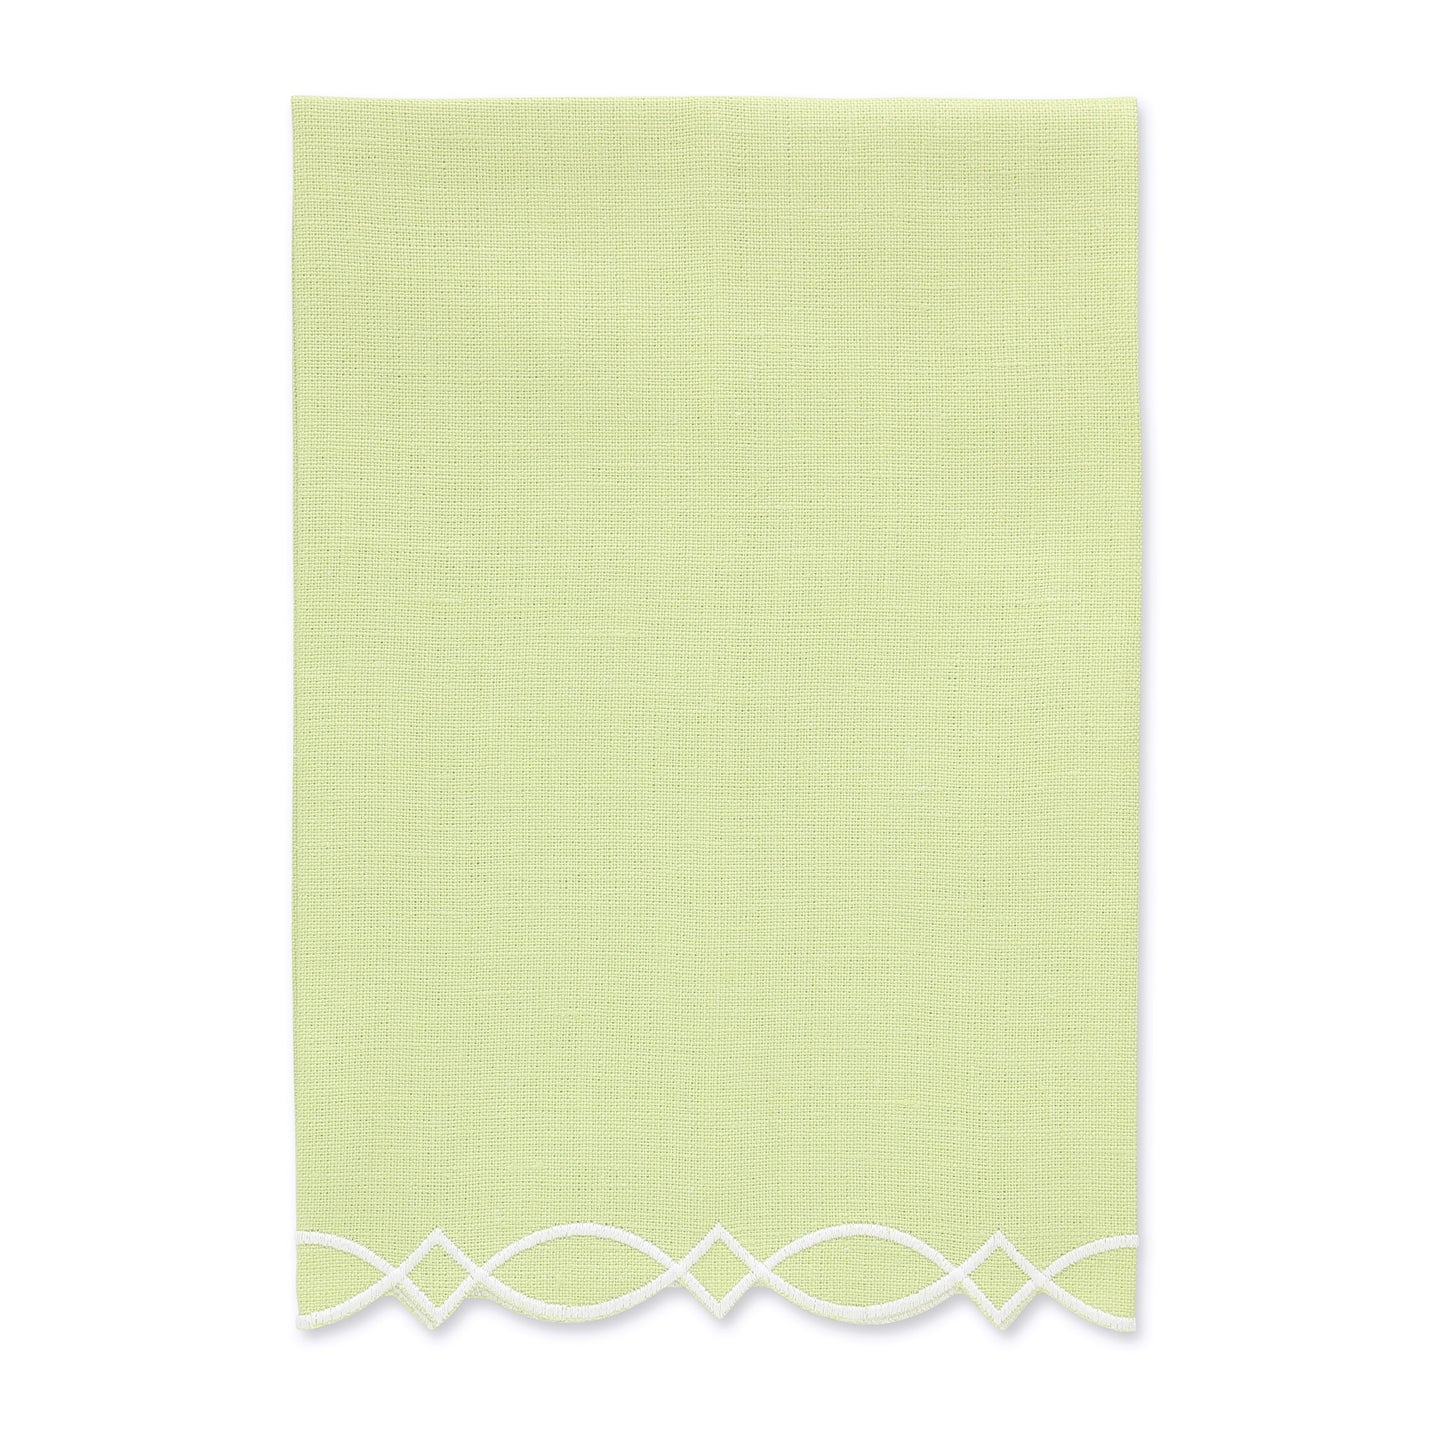 Asciugamano per ospiti in lino verde/crema con bordo ricamato moderno (ciascuno)